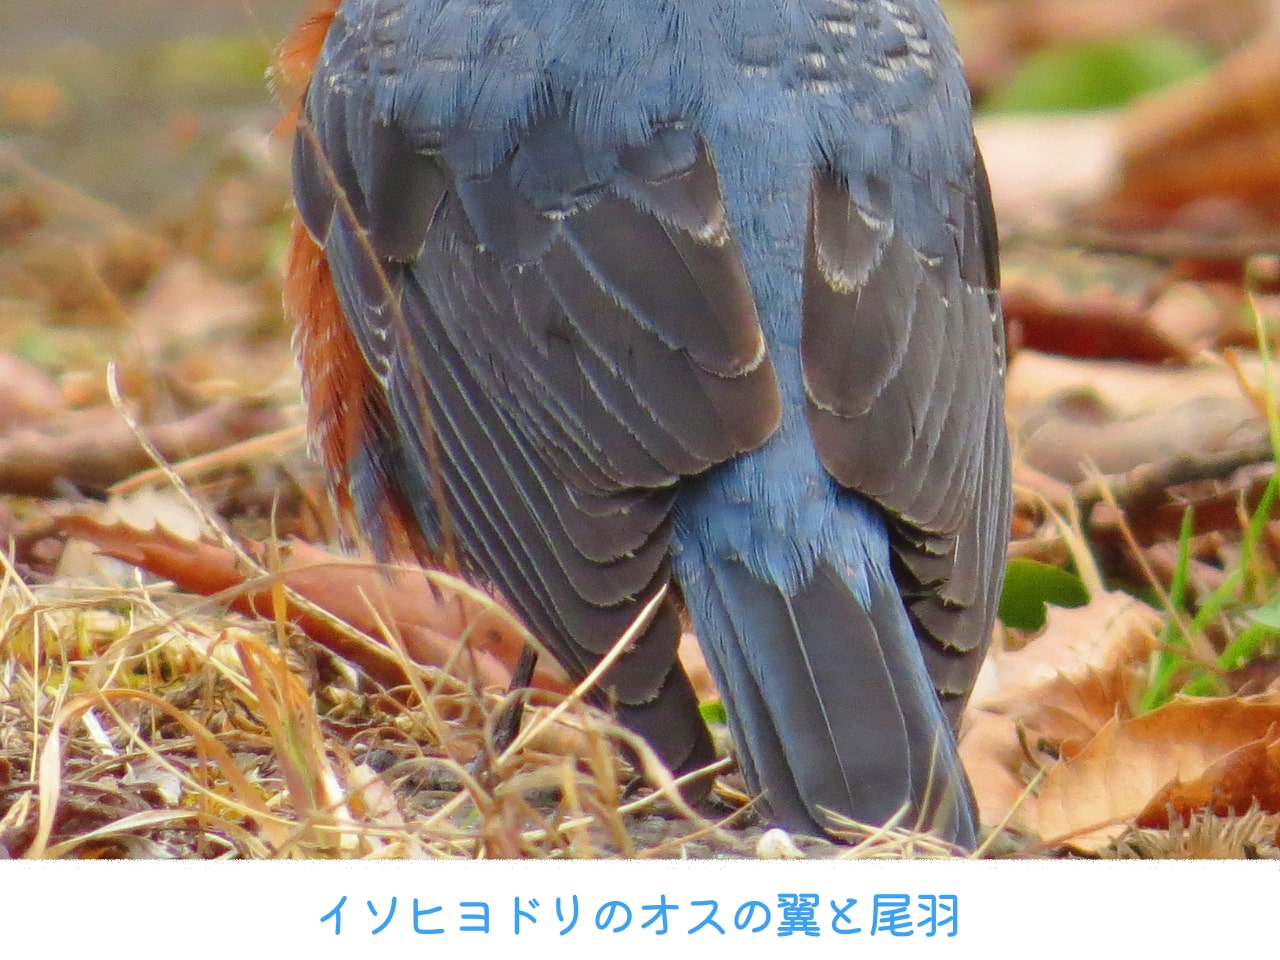 イソヒヨドリのオスの翼と尾羽の拡大画像